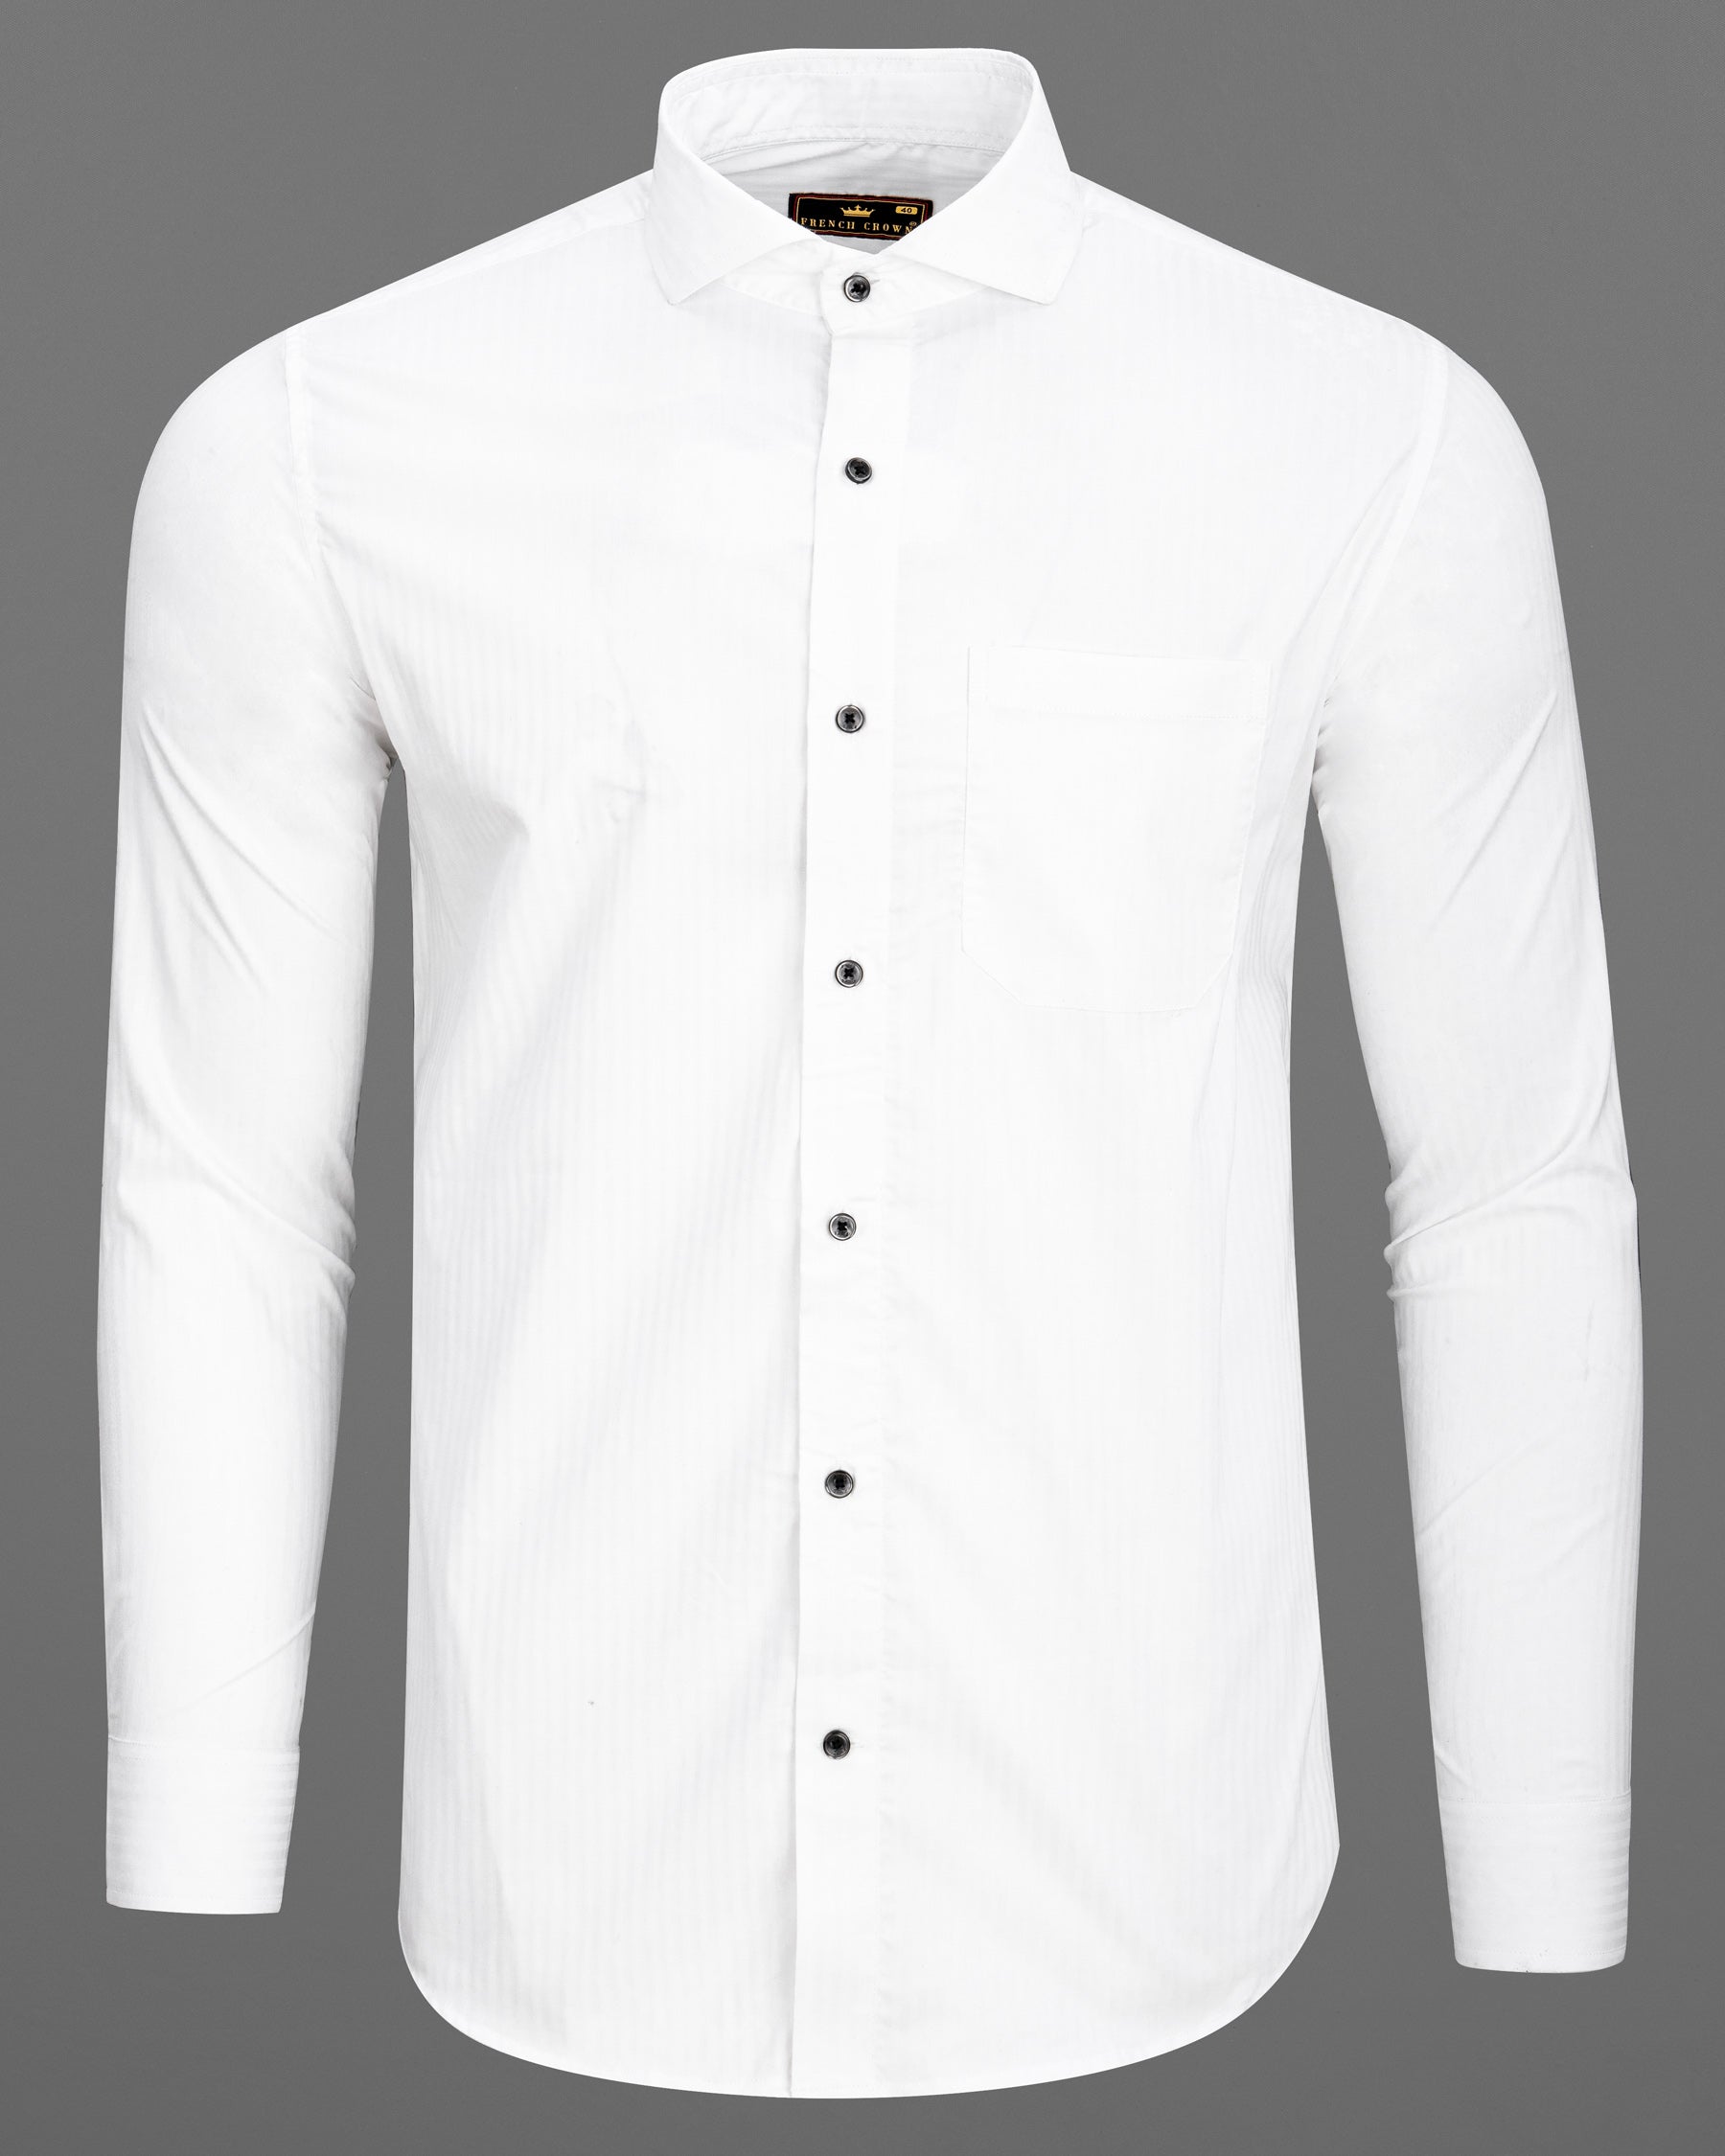 Bright White Striped Premium Cotton Shirt